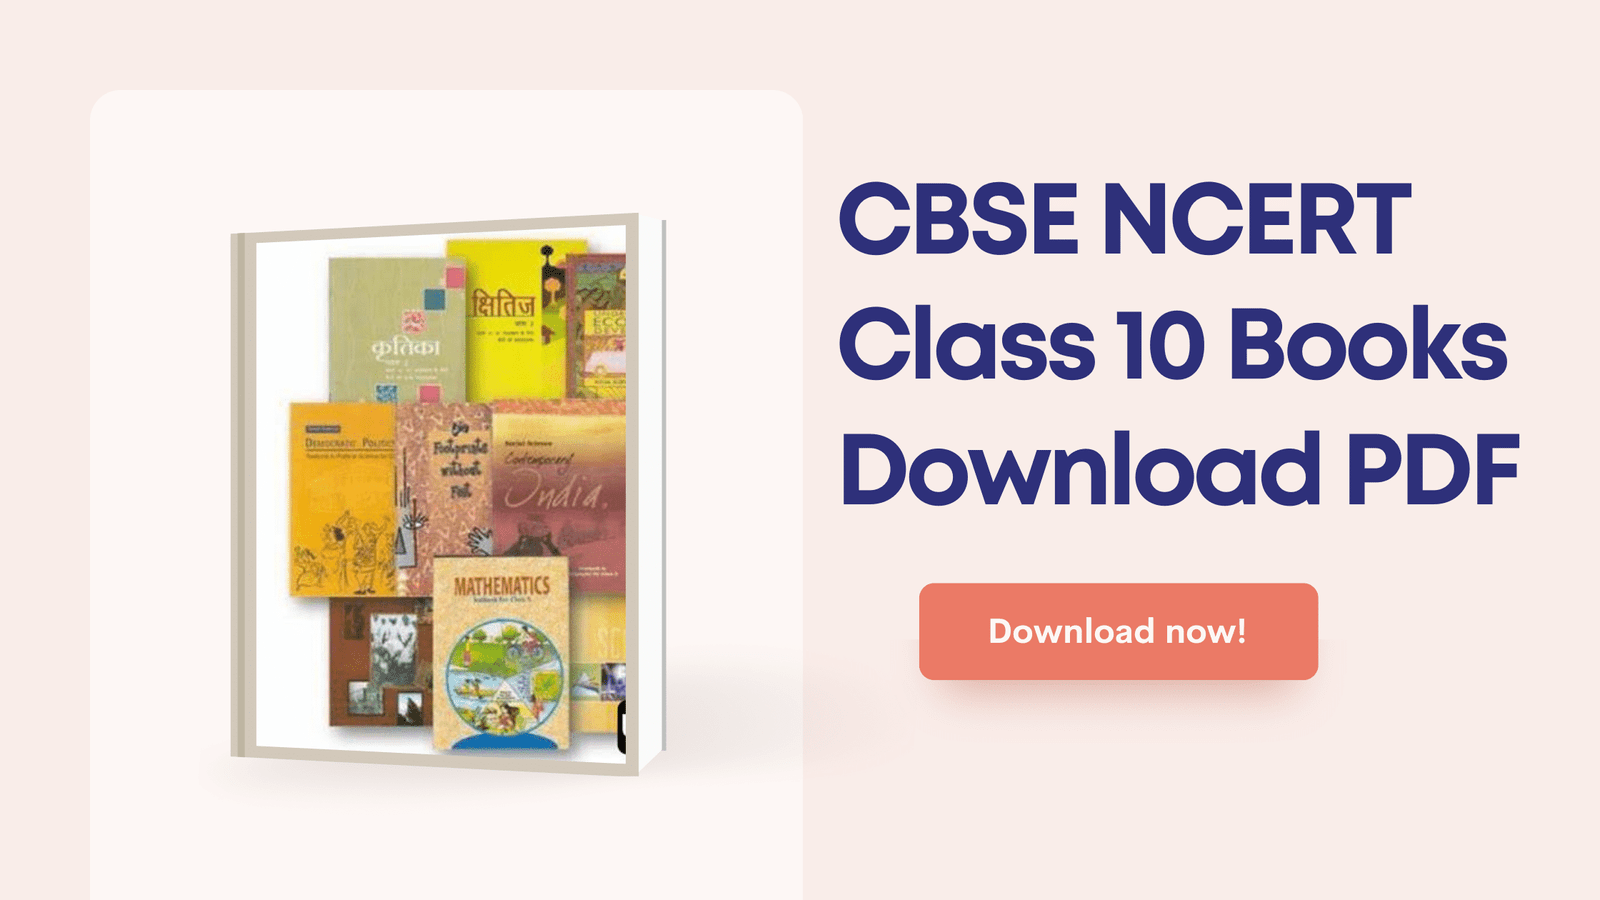 CBSE NCERT Class 10 Books Download PDF